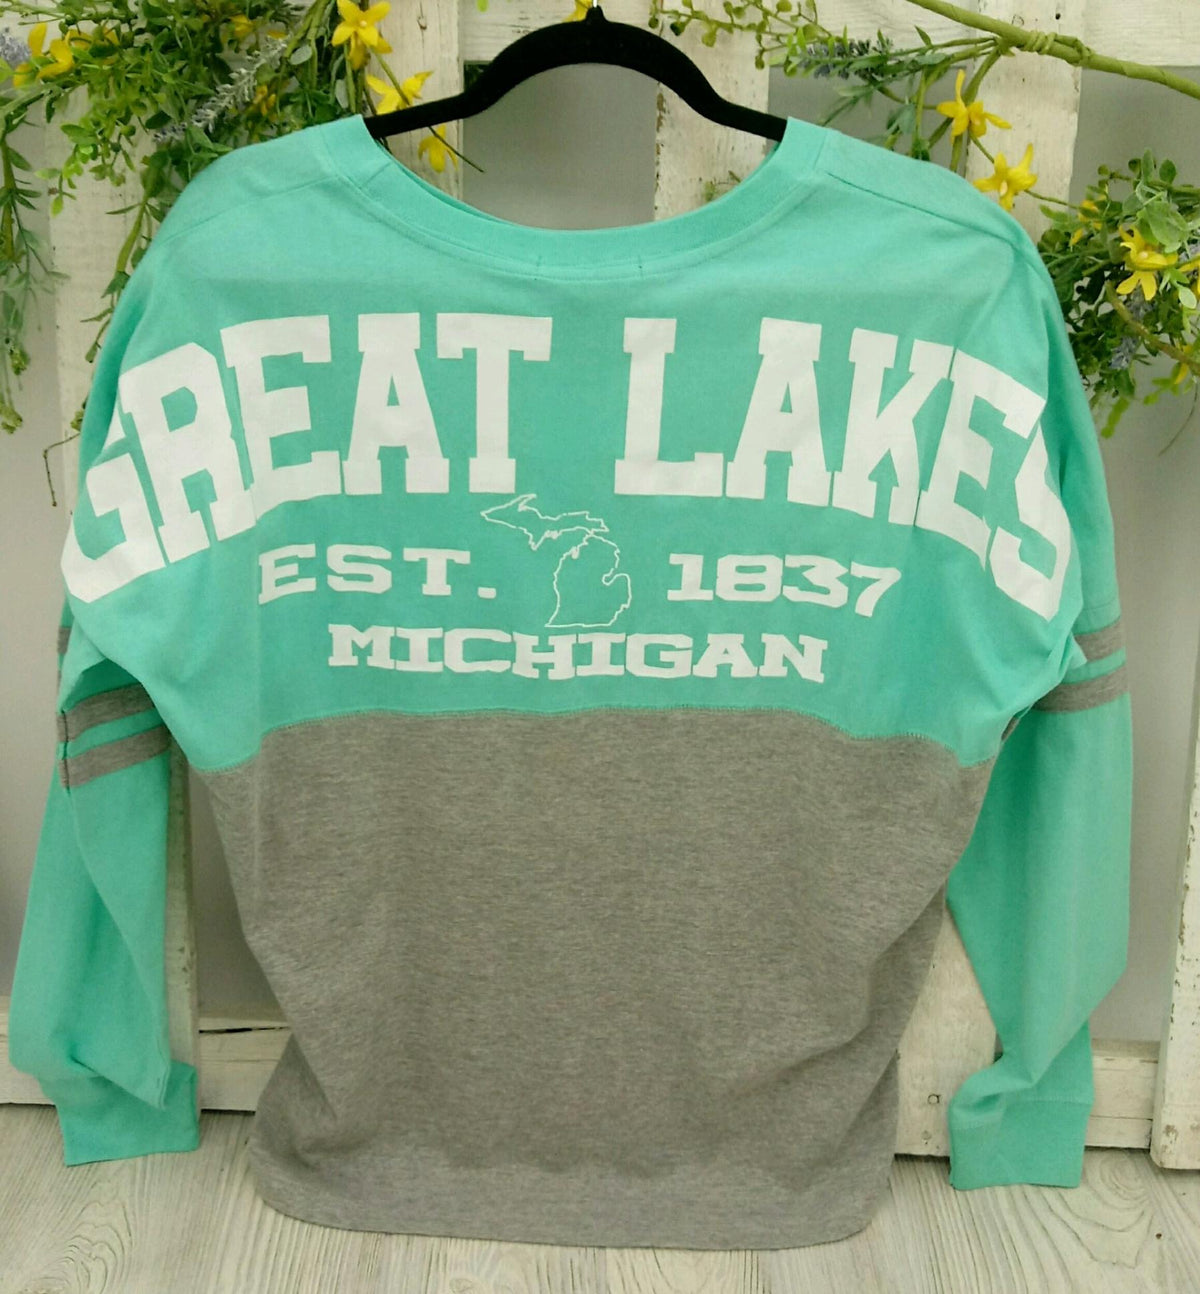 Great Lakes LS Shirt